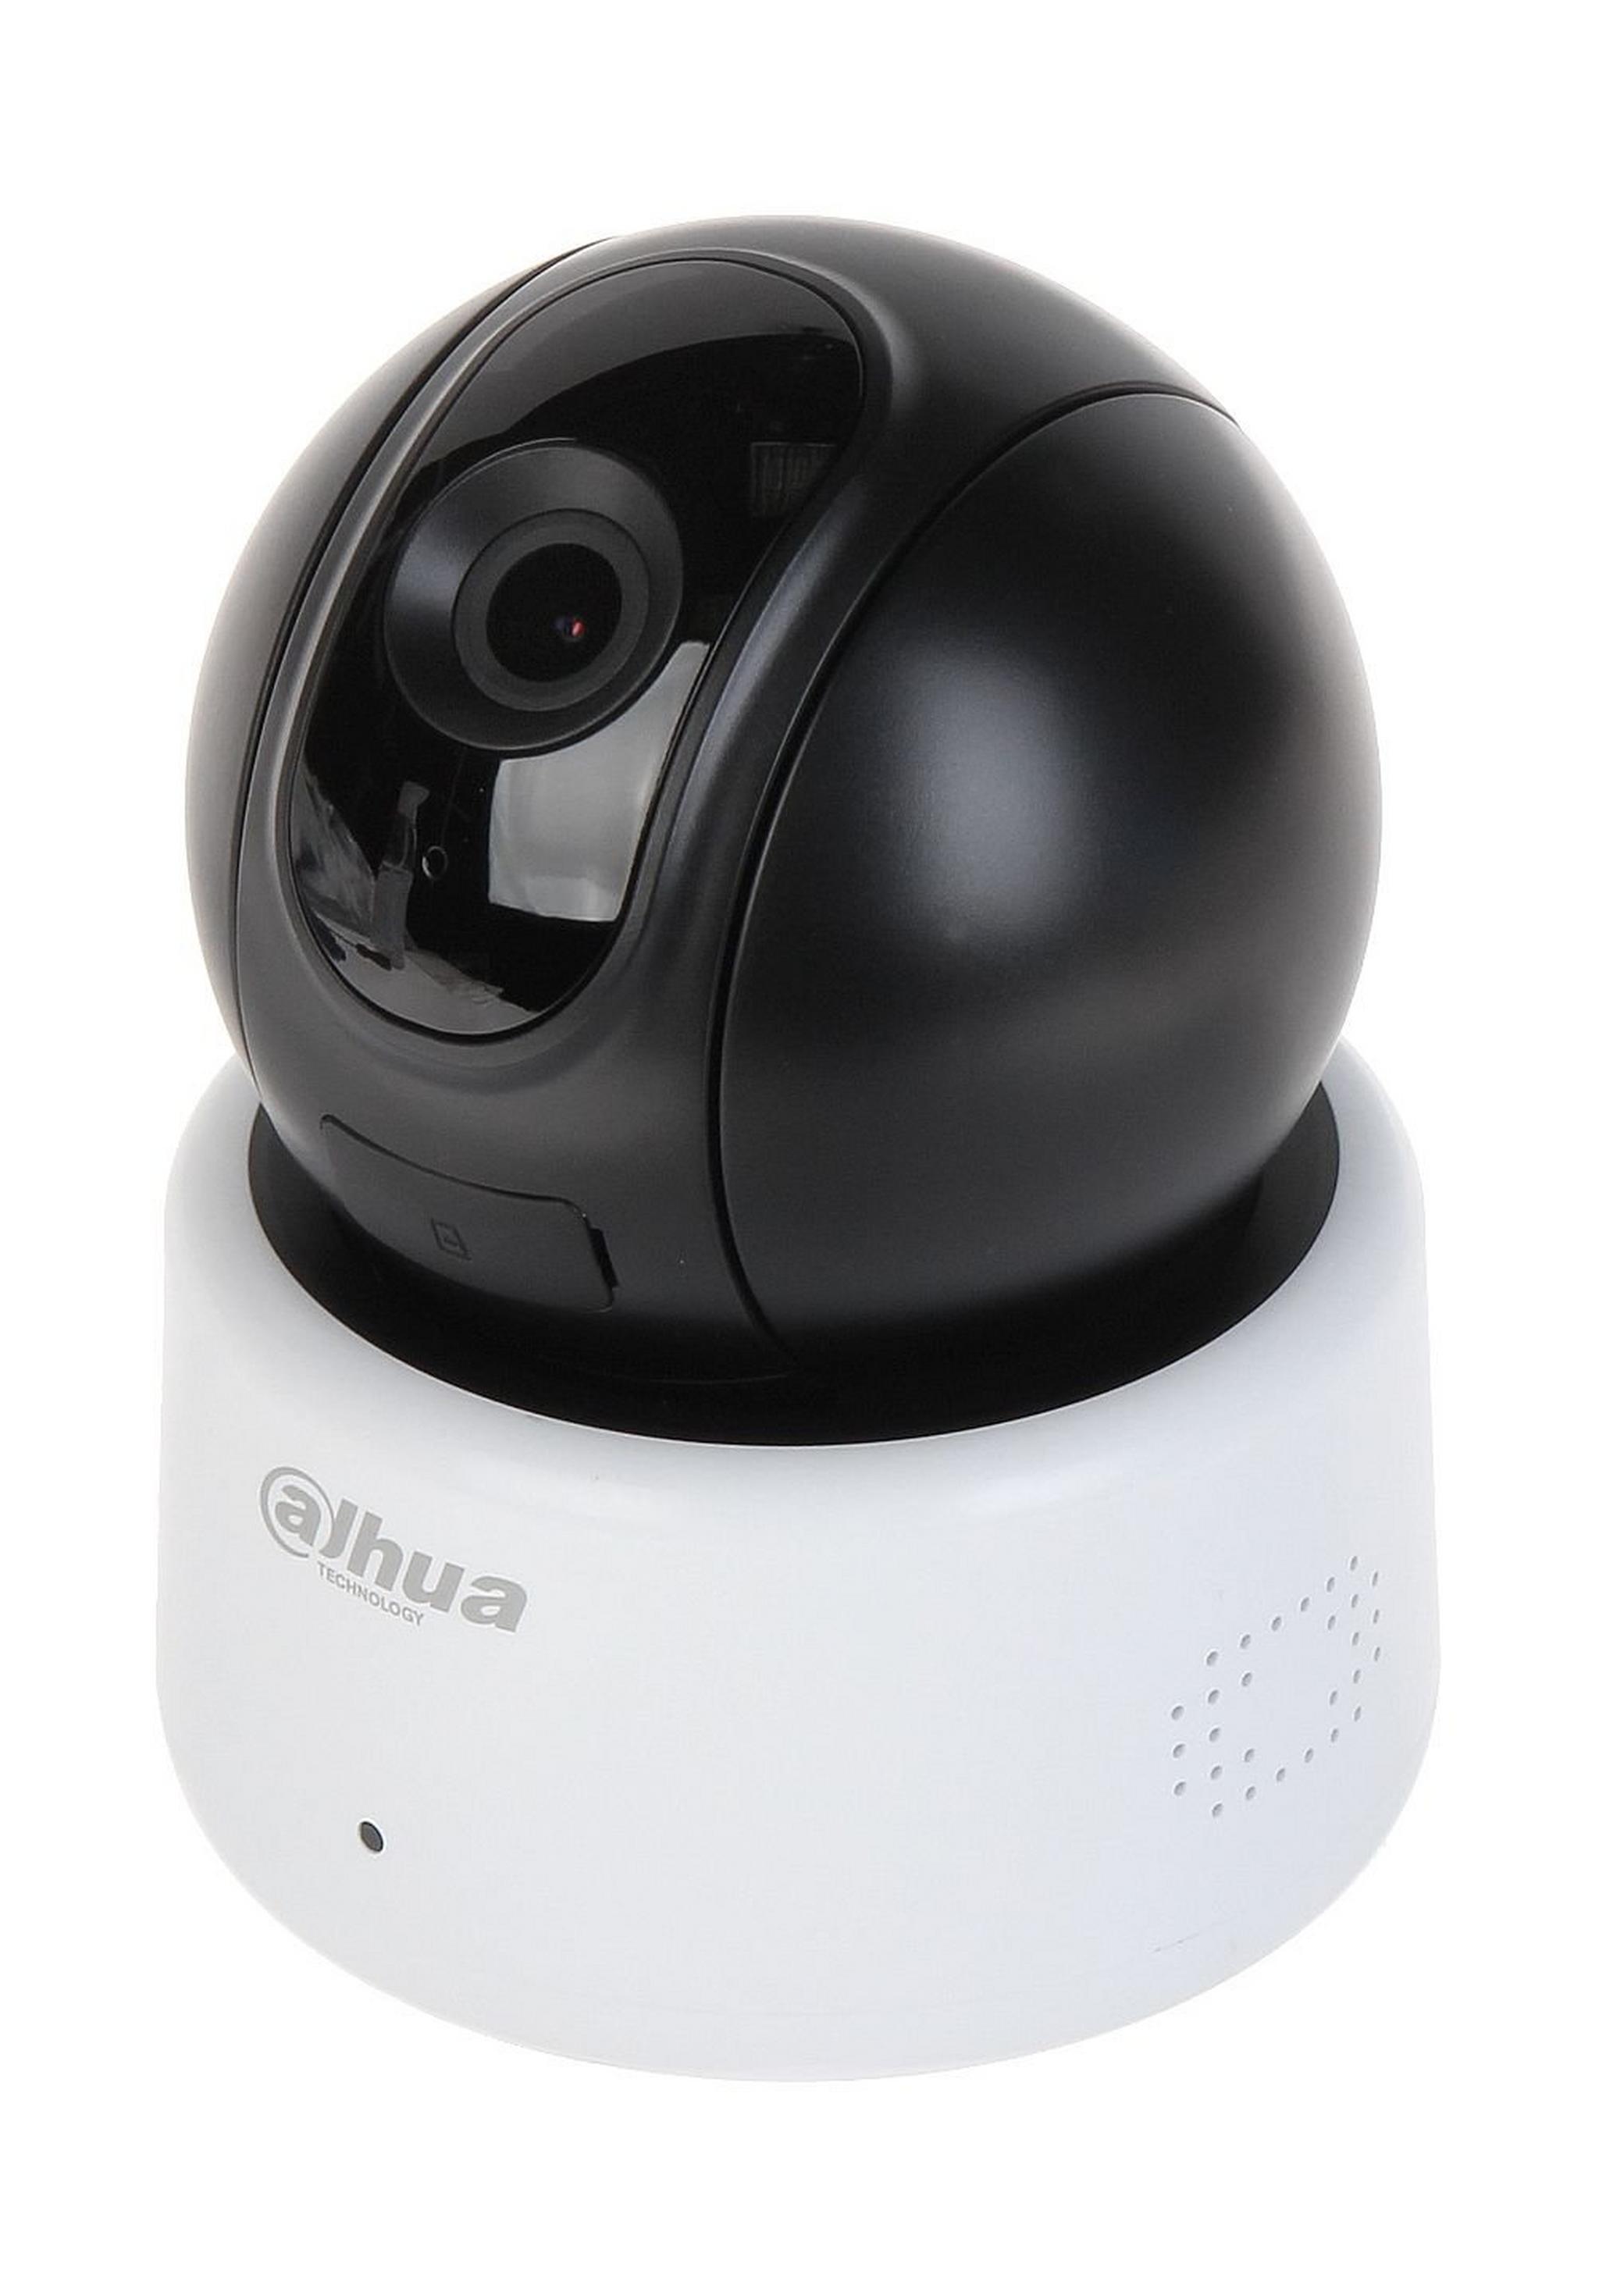 كاميرا المراقبة داهوا واي - فاي بي تي بدقة 1080 بكسل - أبيض  (DH-IPC-A22P)